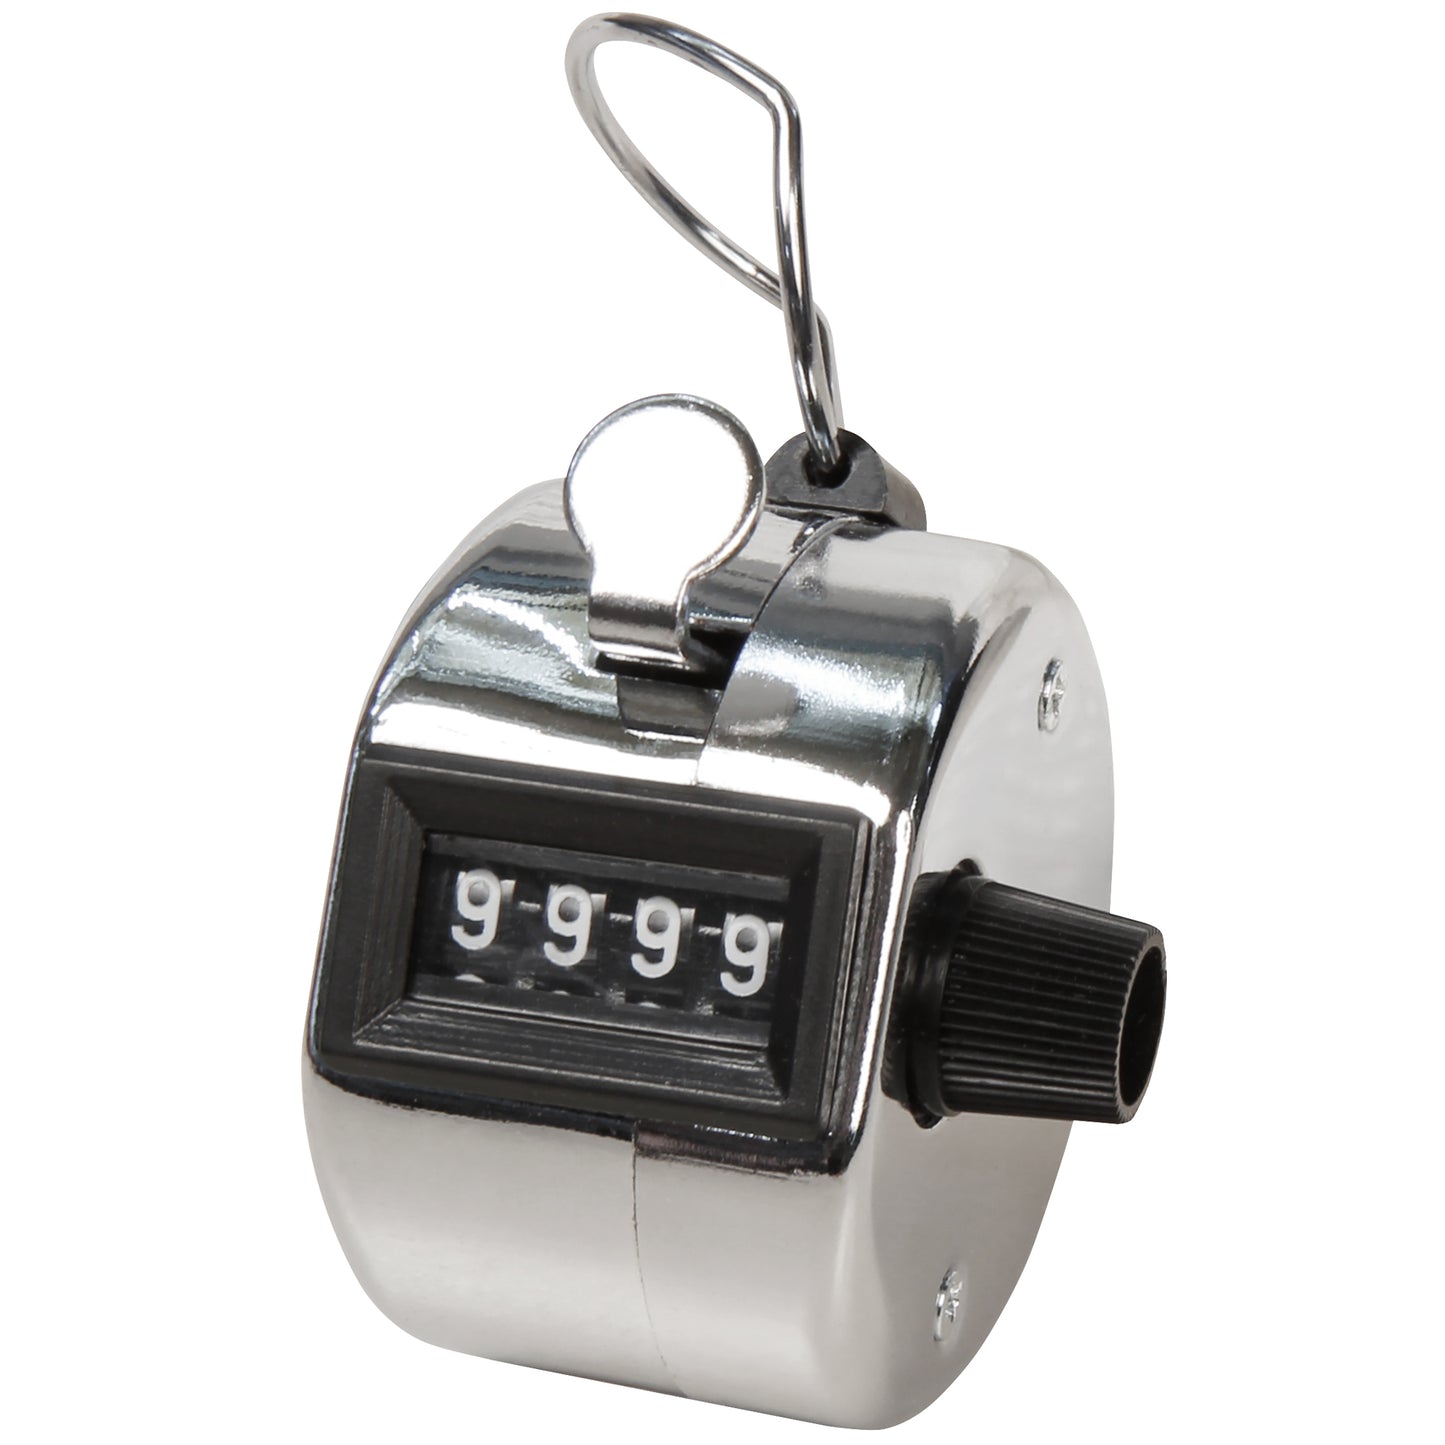 Mechanischer Handzähler Metall / 0 bis 9999 / Mengenzähler Counter Stückzähler